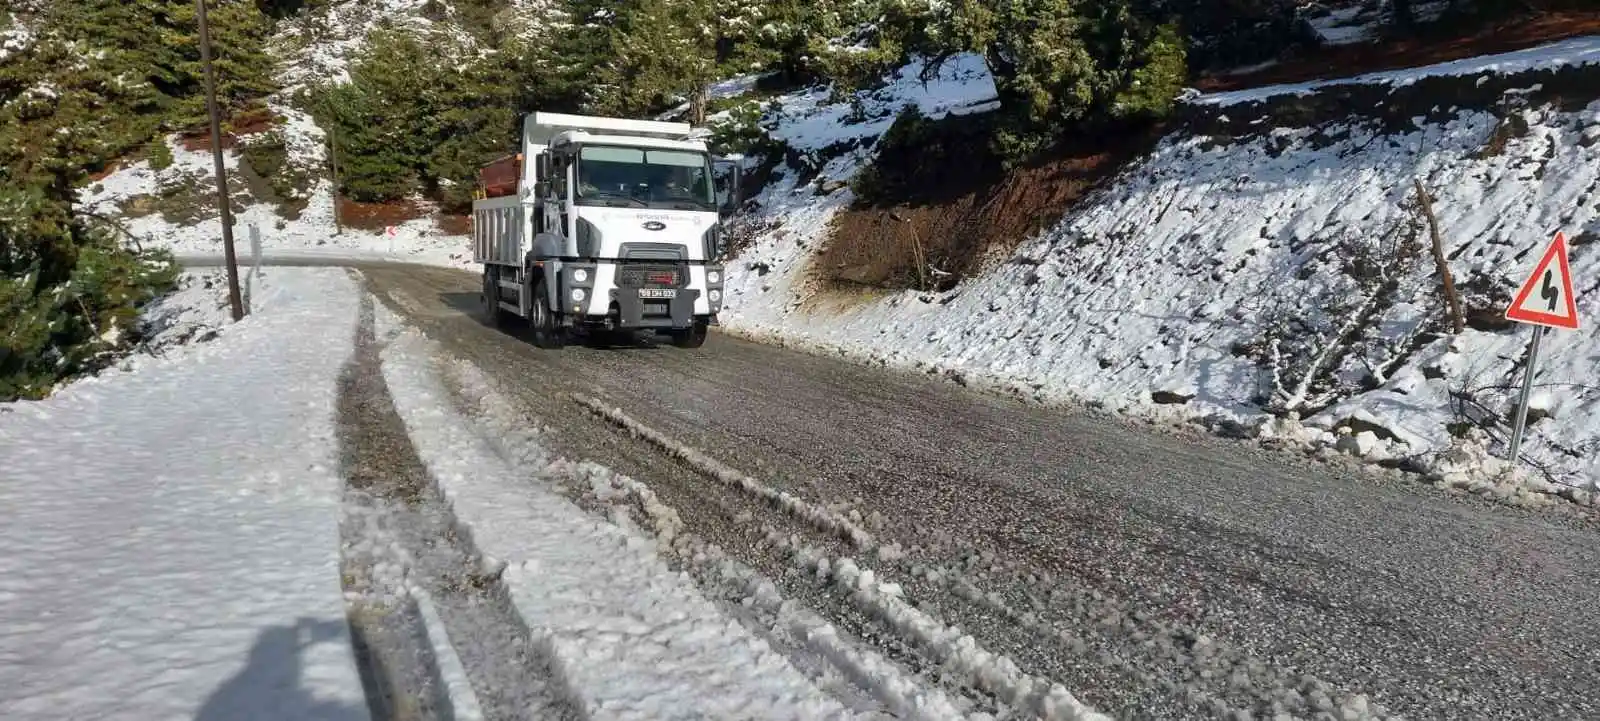 Büyükşehir ekiplerinin karla mücadele çalışmaları sürüyor
